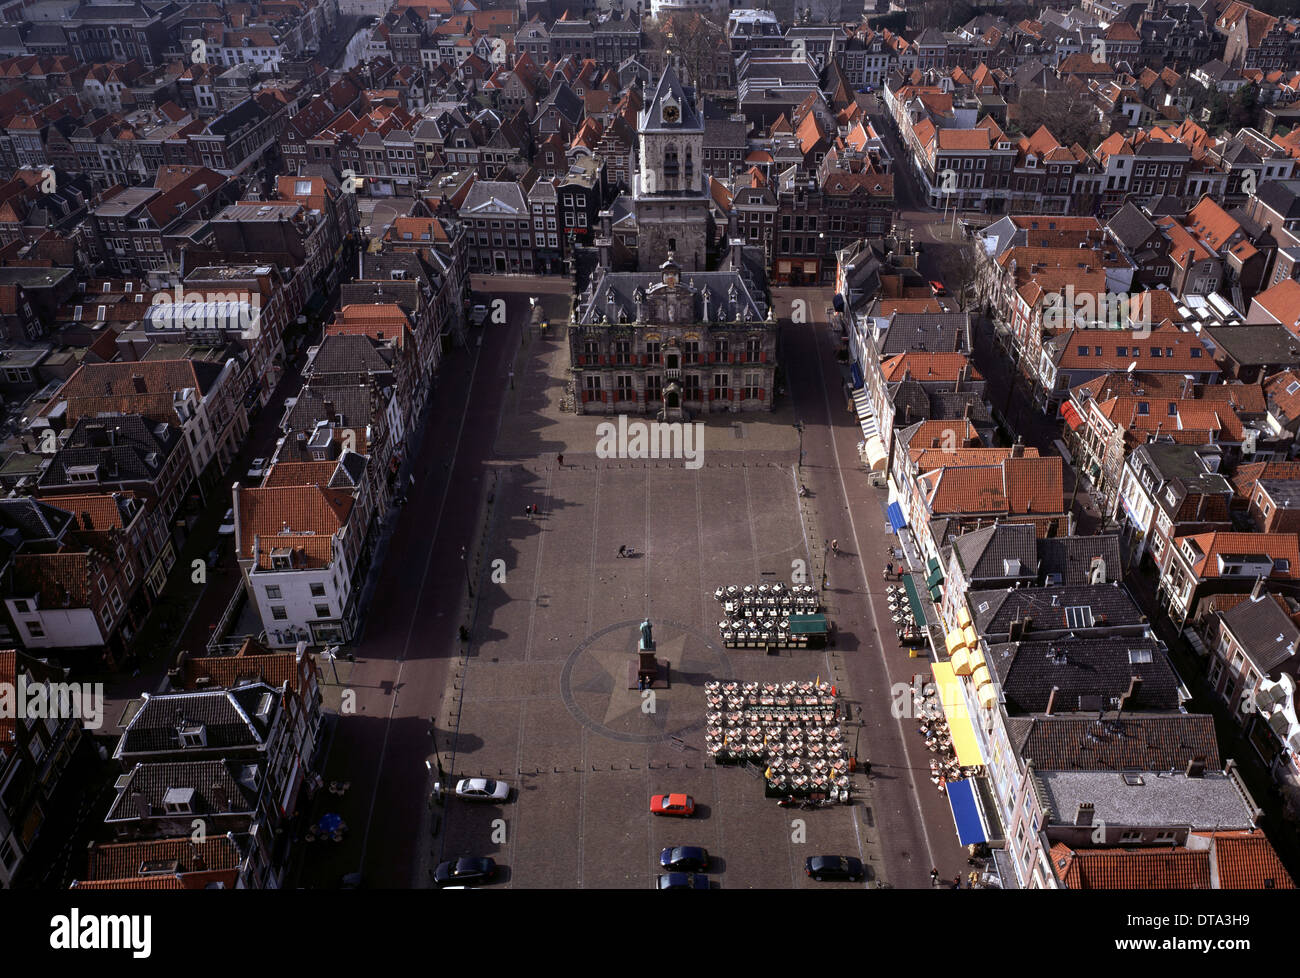 Delft, Marktplatz Stock Photo